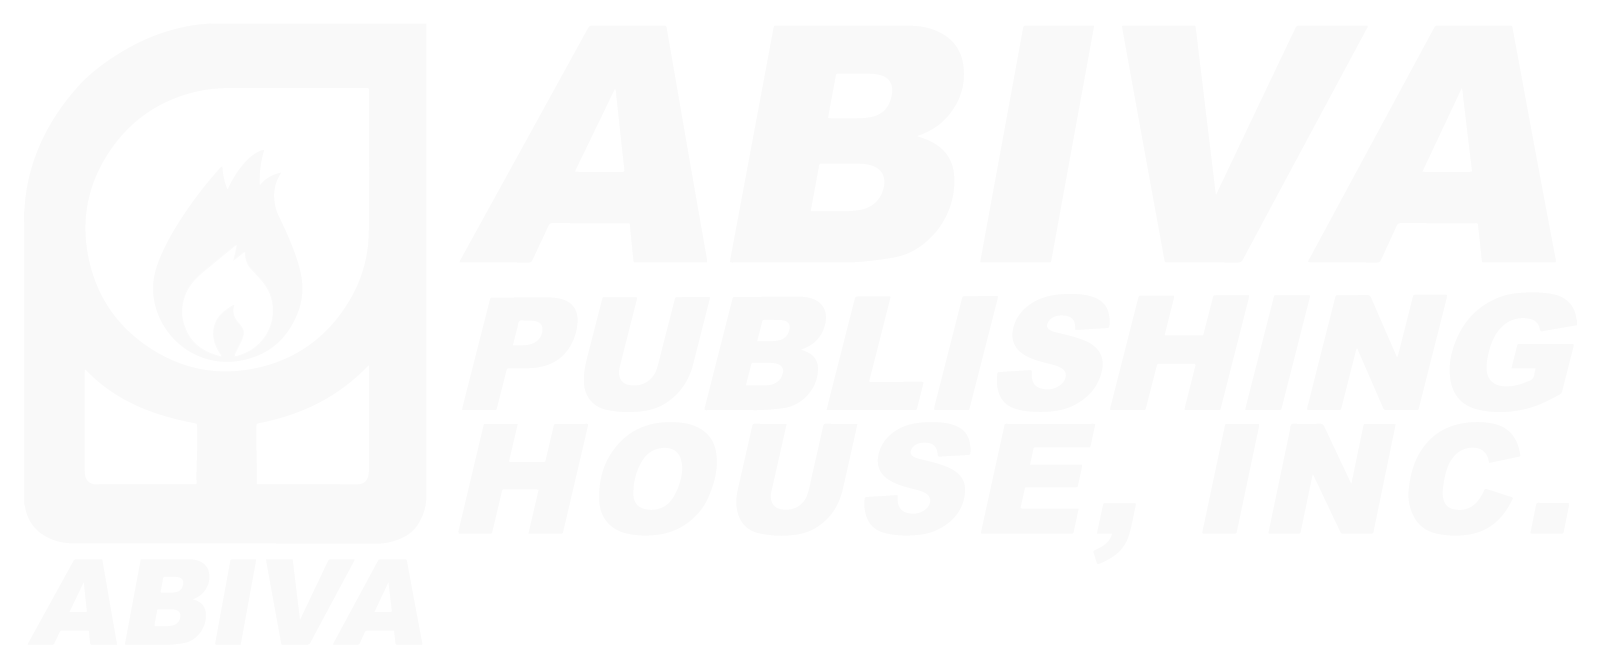 Abiva Publishing House Inc.